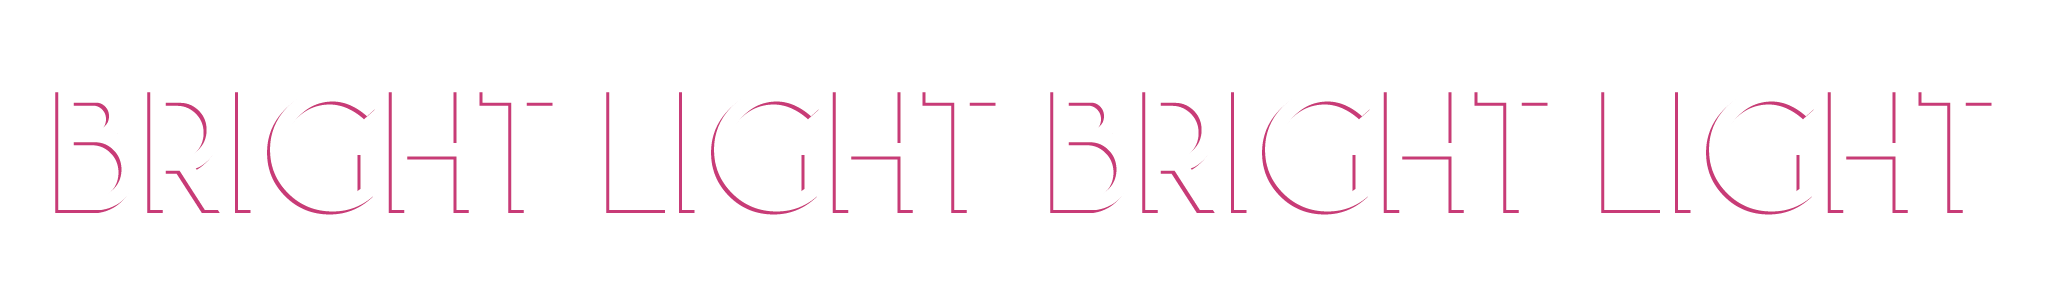 Bright Light Bright Light Official Store logo